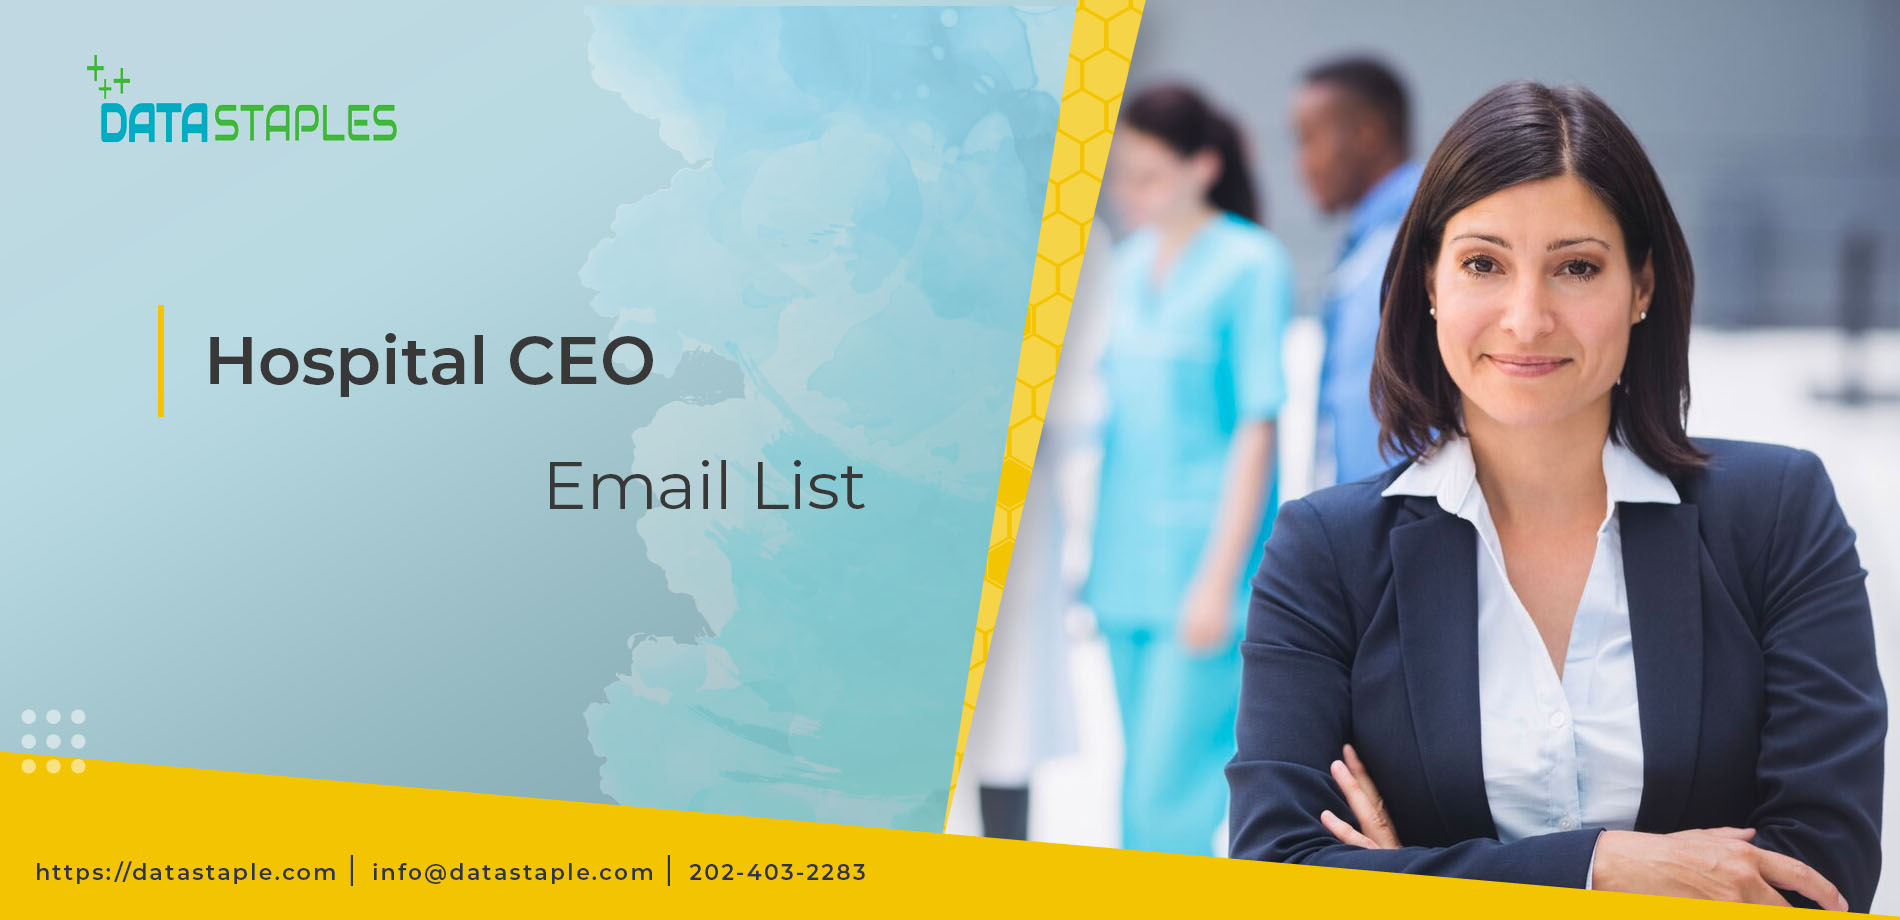 Hospital CEO Email List | DataStaples